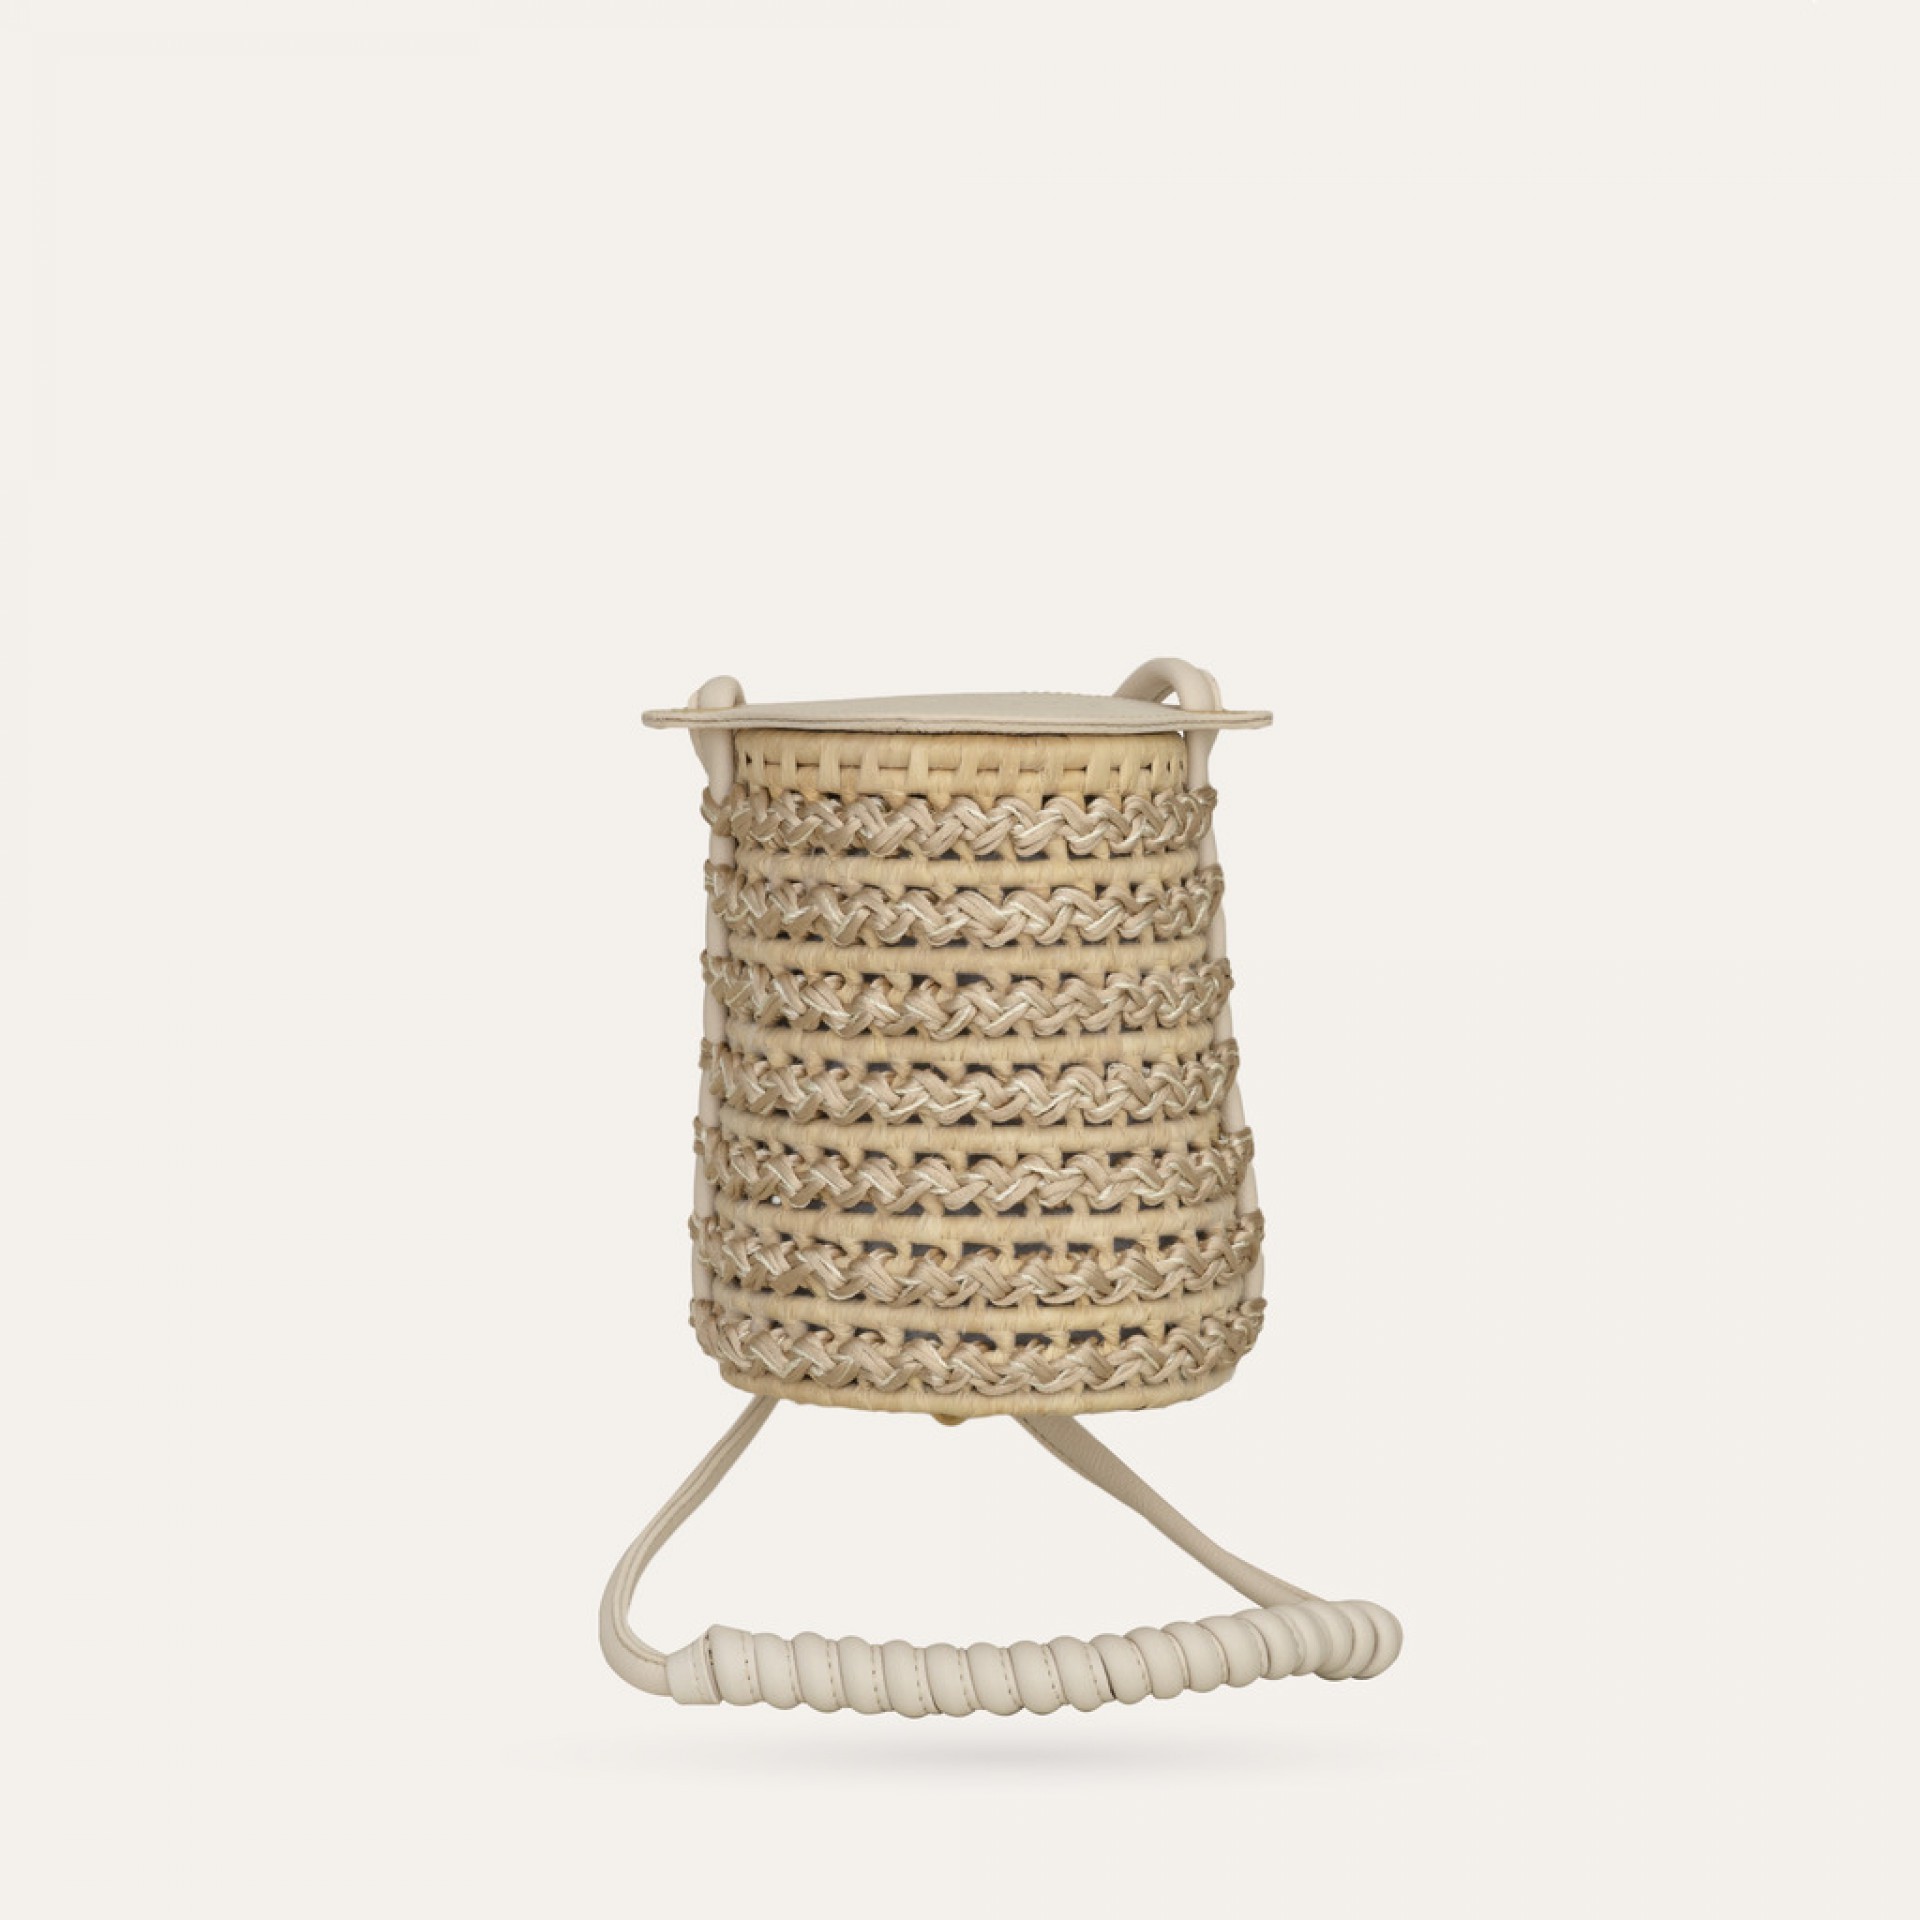 "A arte do crochê foi entrelaçada no cesto de palha de Carnaúba e os detalhes de couro vegano dão o toque moderno e enriquecedor ao seu design.", detalha descrição no site